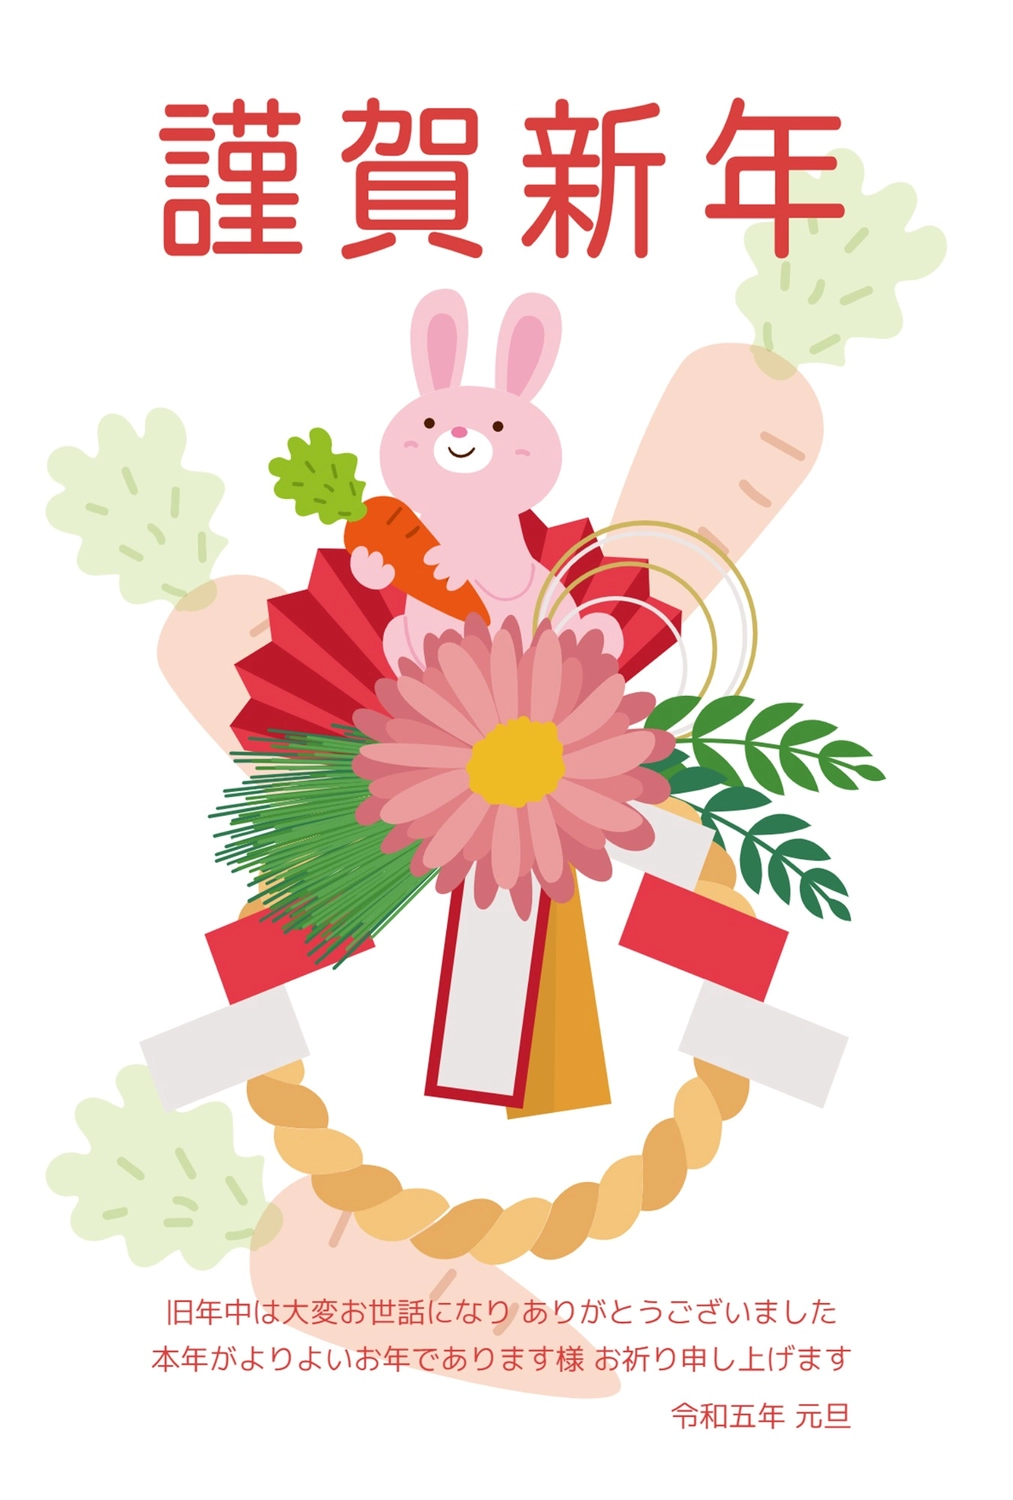 しめ飾りとにんじんの卯年年賀状, animal, carrot, concord, New Year Card template